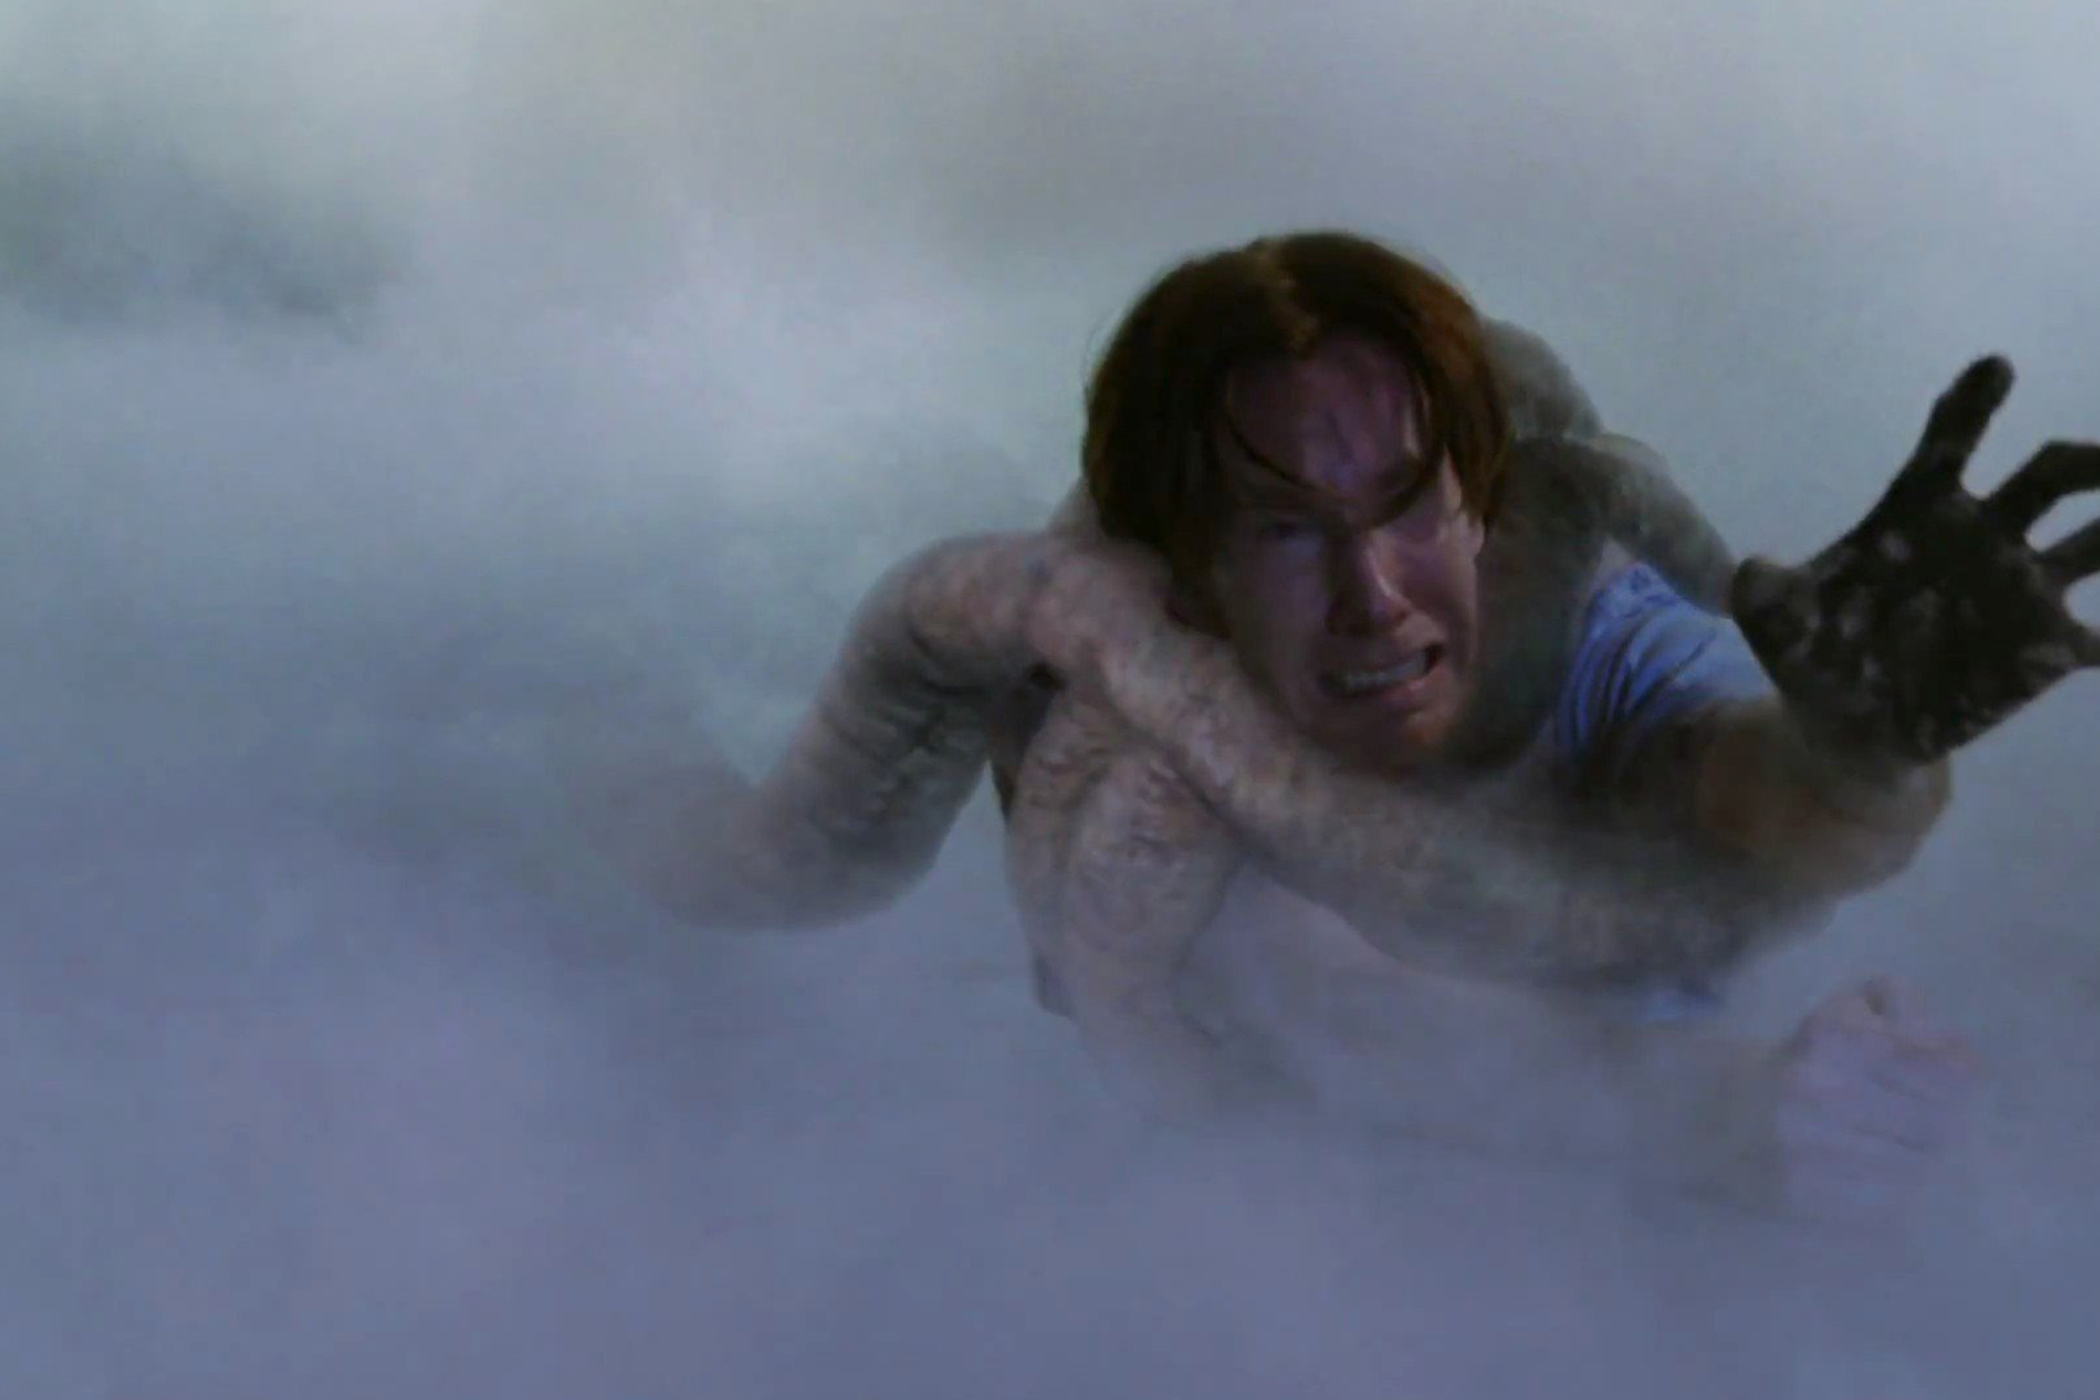 Um personagem de The Mist está sendo puxado para um fundo enevoado pelo tentáculo de uma criatura.